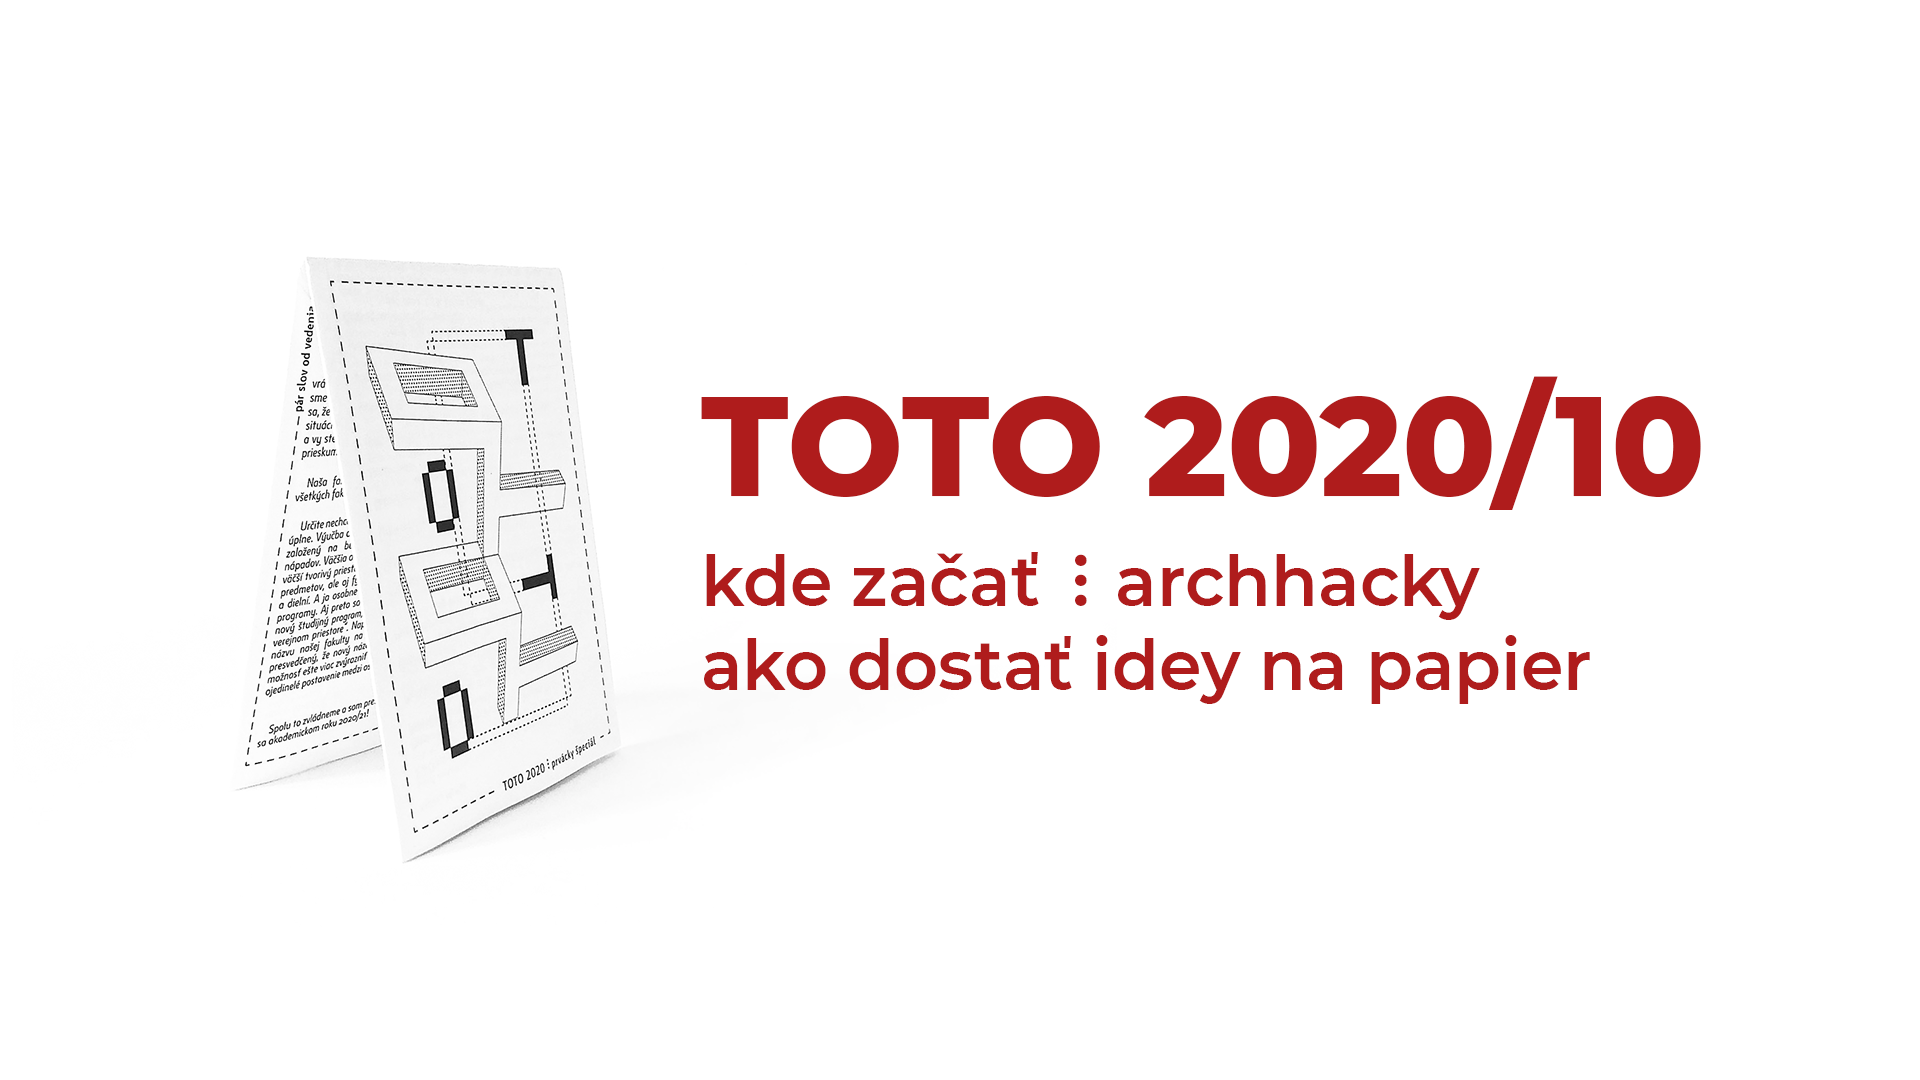 TOTO 2020/10 ⋮ kde začať ⋮ archhacky ⋮ ako dostať idey na papier